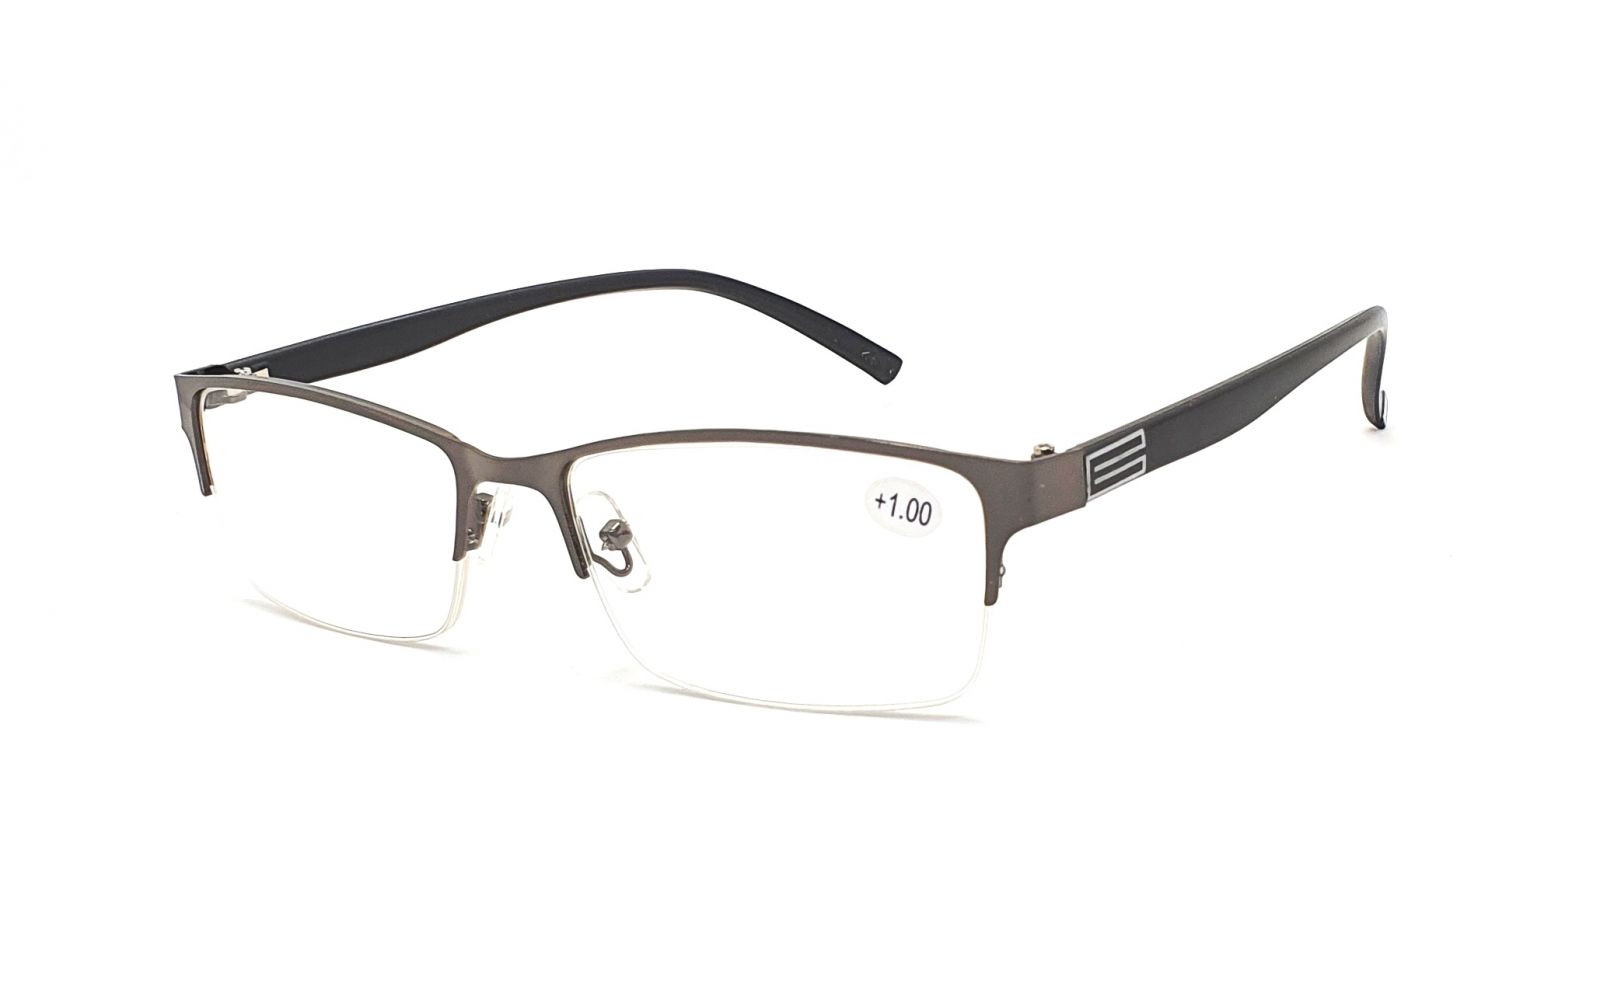 Dioptrické brýle OK230 +1,00 gray/black